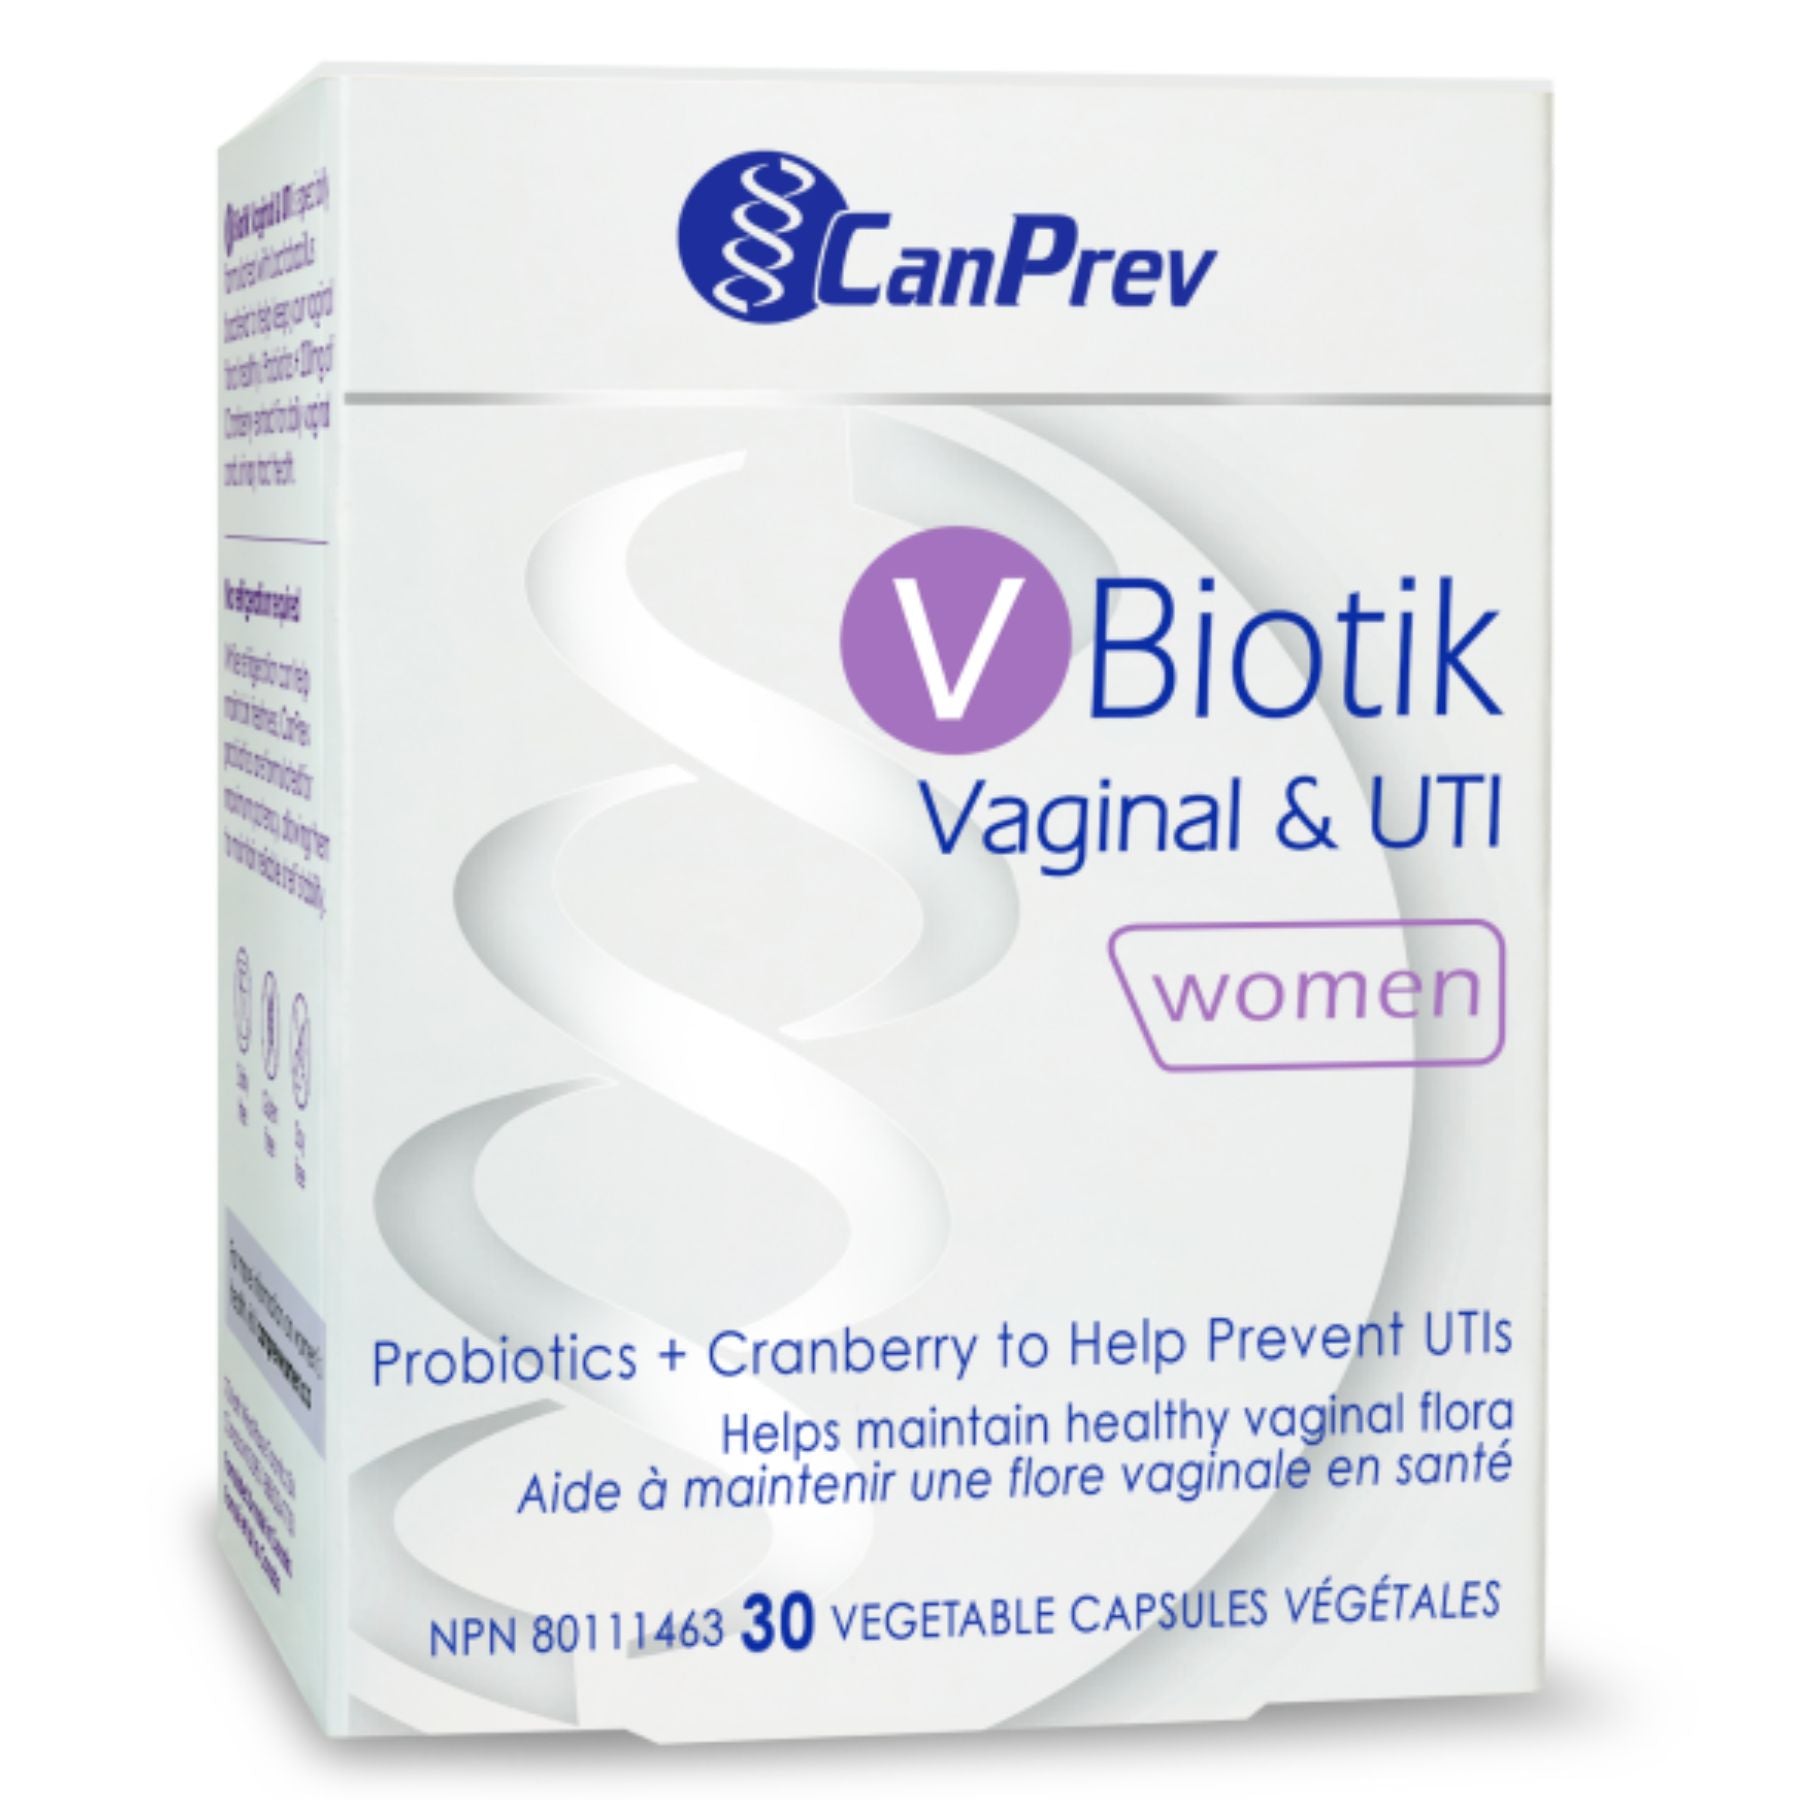 CanPrev V Biotik Vaginal & UTI Probiotic 30s